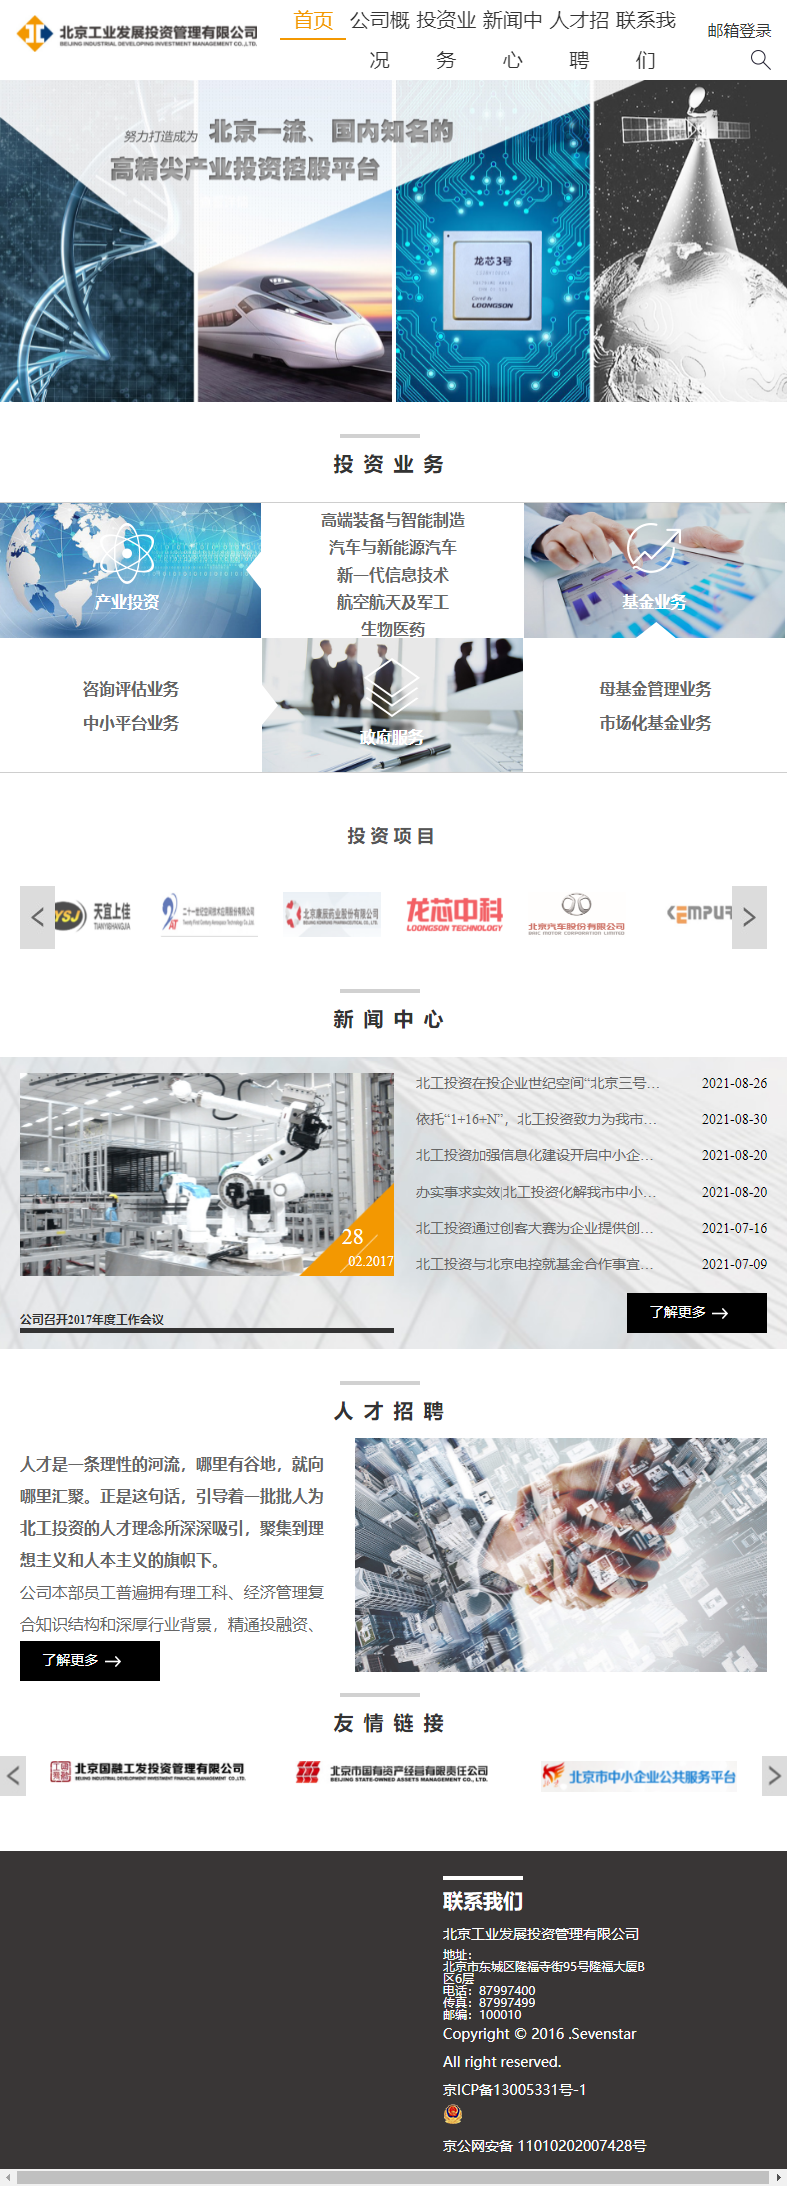 北京工业发展投资管理有限公司网站案例